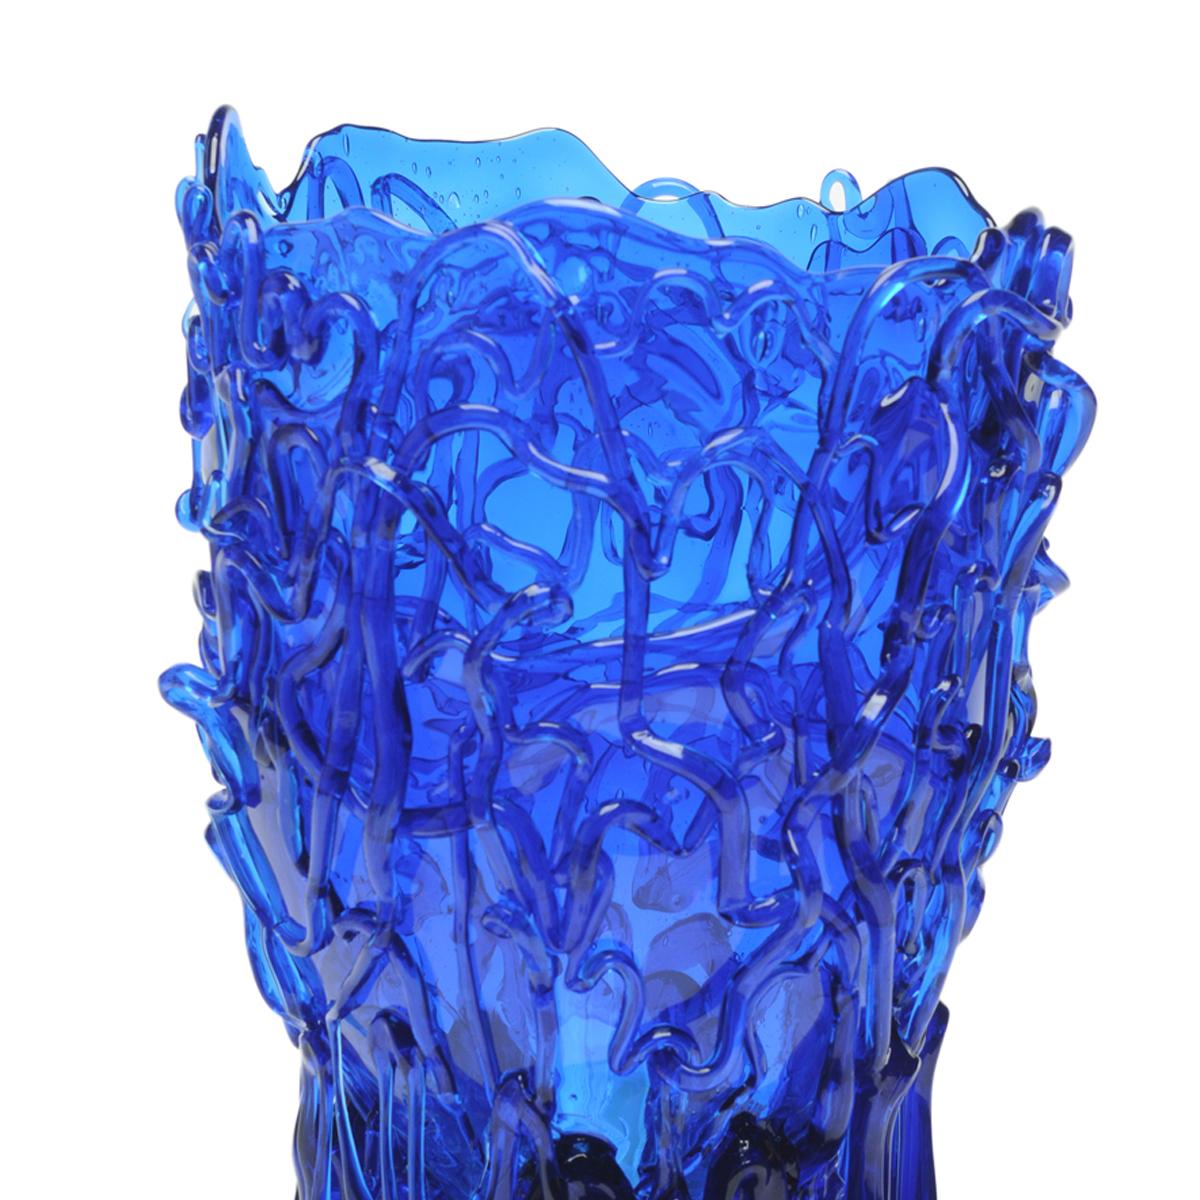 Vase Medusa, bleu clair

Vase en résine souple conçu par Gaetano Pesce en 1995 pour la collection Fish Design.

Mesures : M - ø 16cm x H 26cm

Autres tailles disponibles

Couleurs : Bleu clair.
Vase en résine souple conçu par Gaetano Pesce